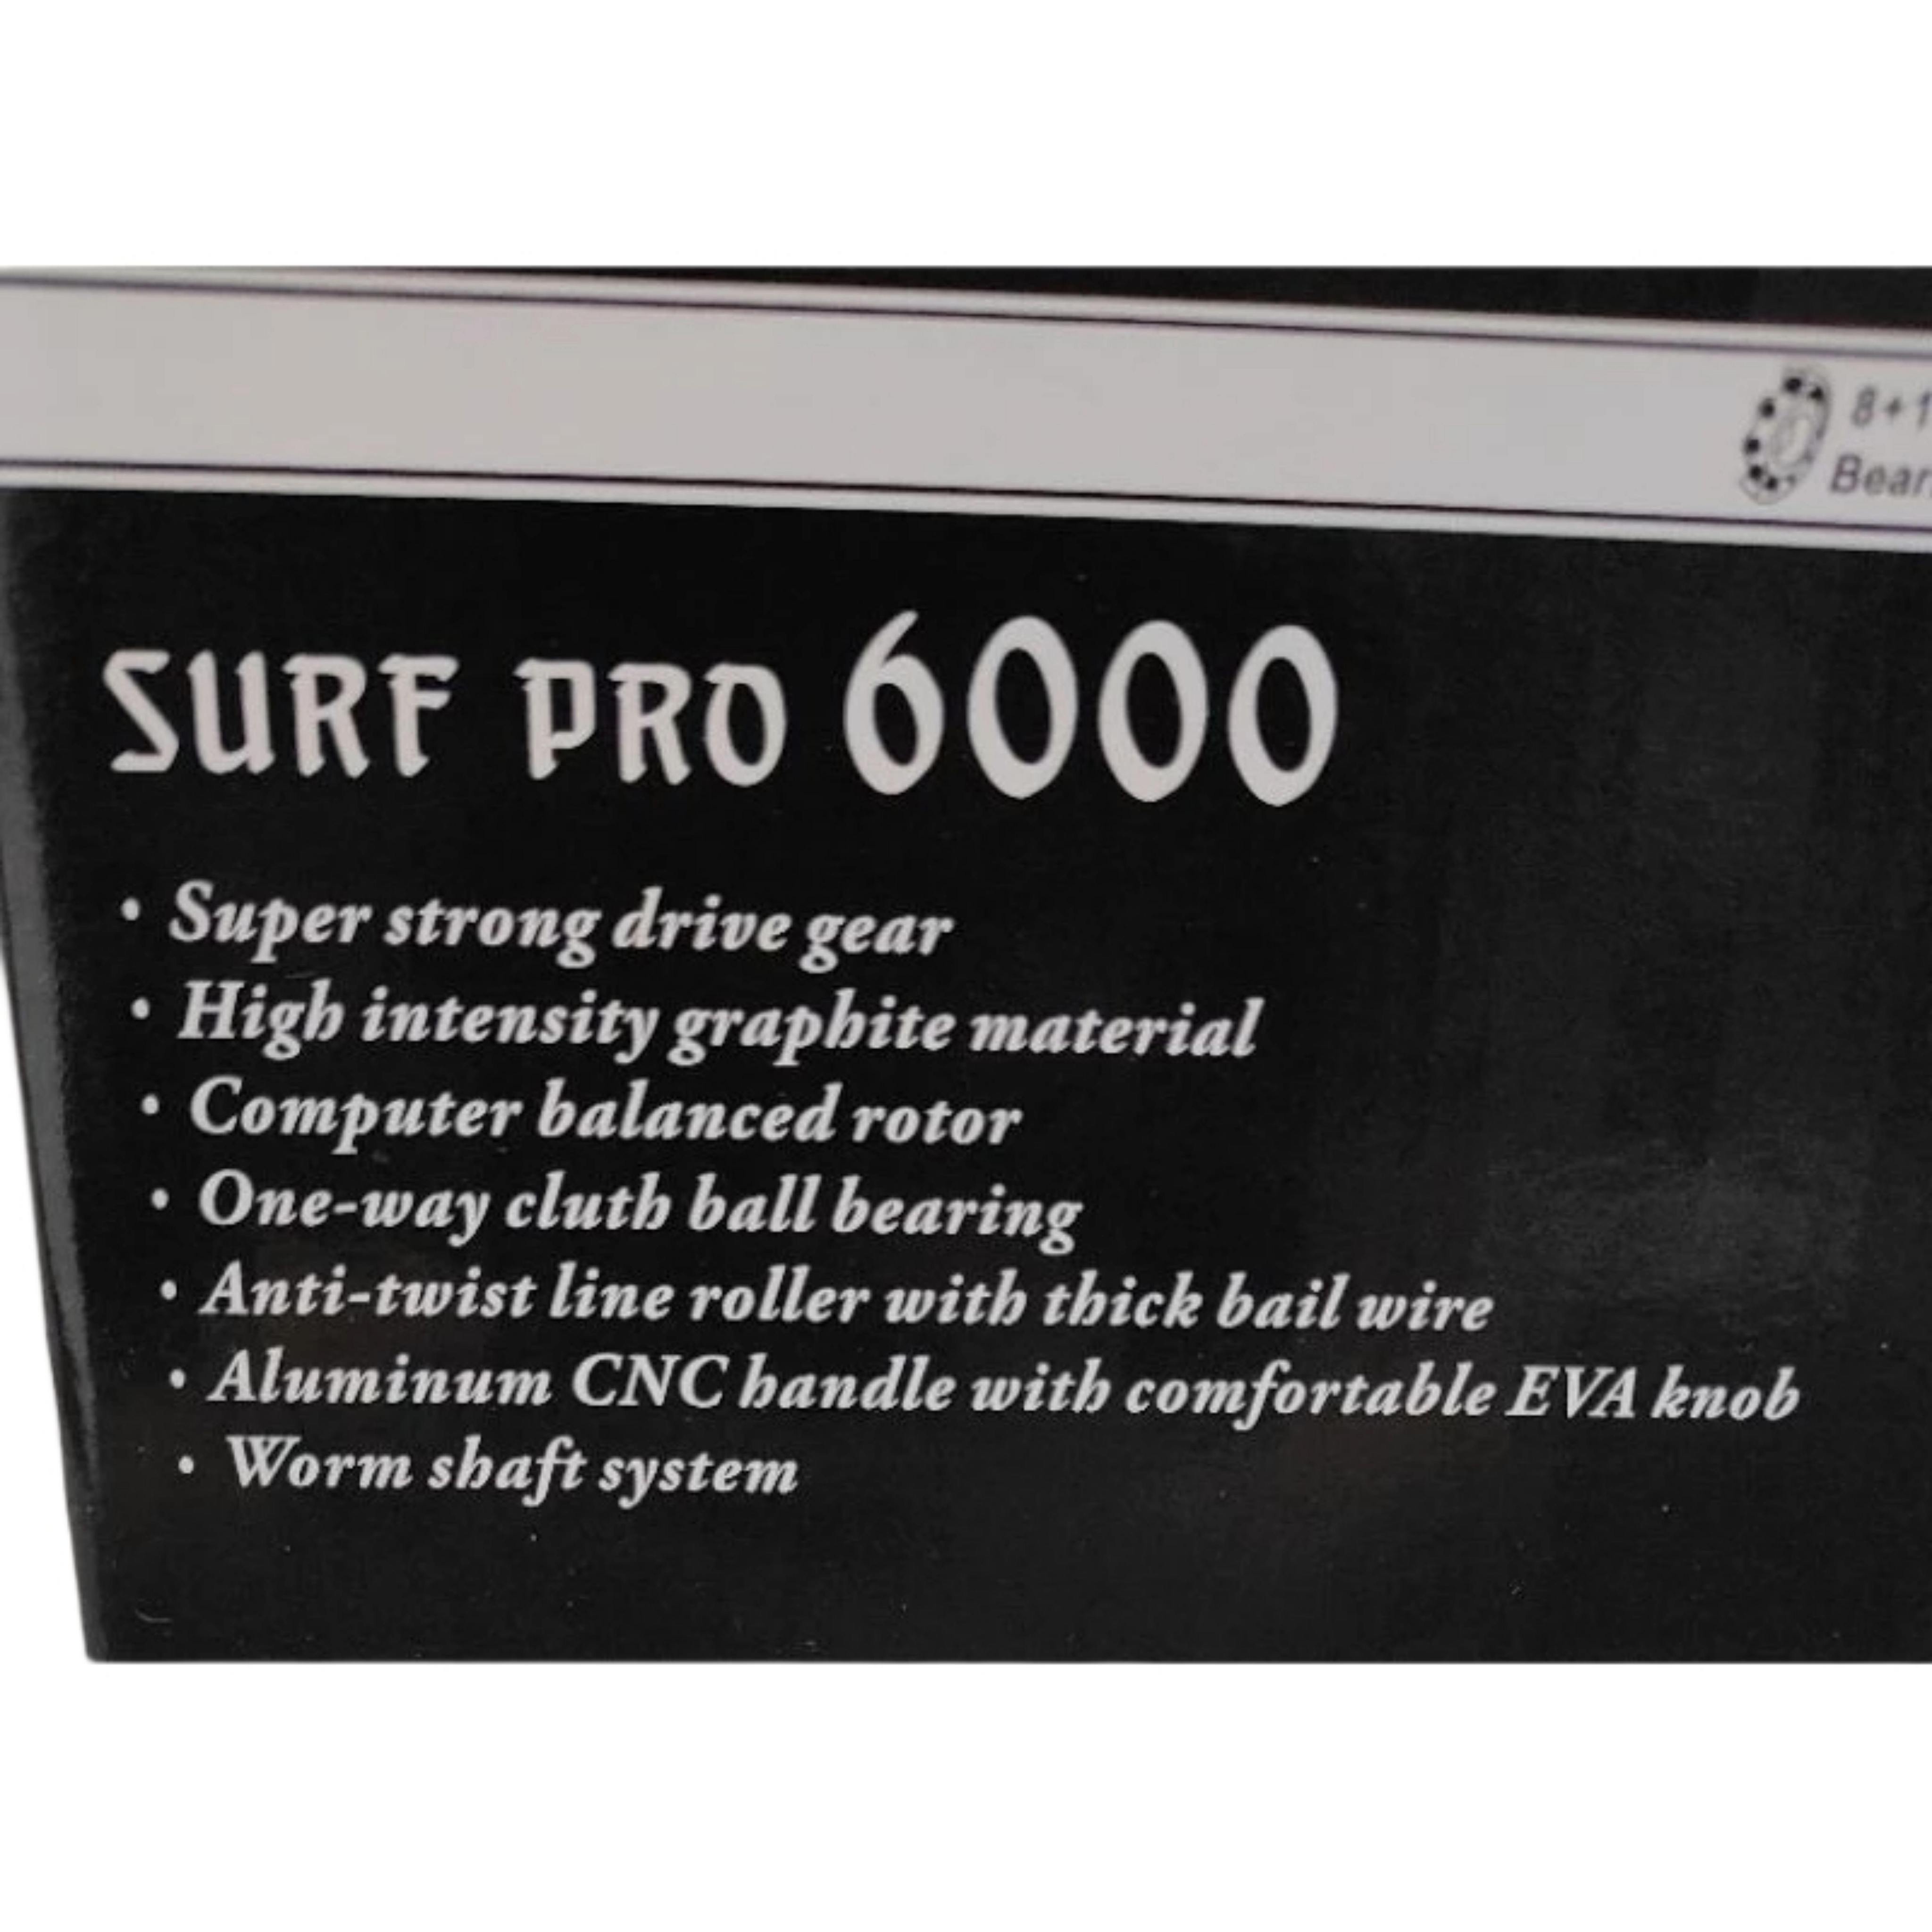 HASAMU SURF PRO 6000 SPINNING FISHING REEL